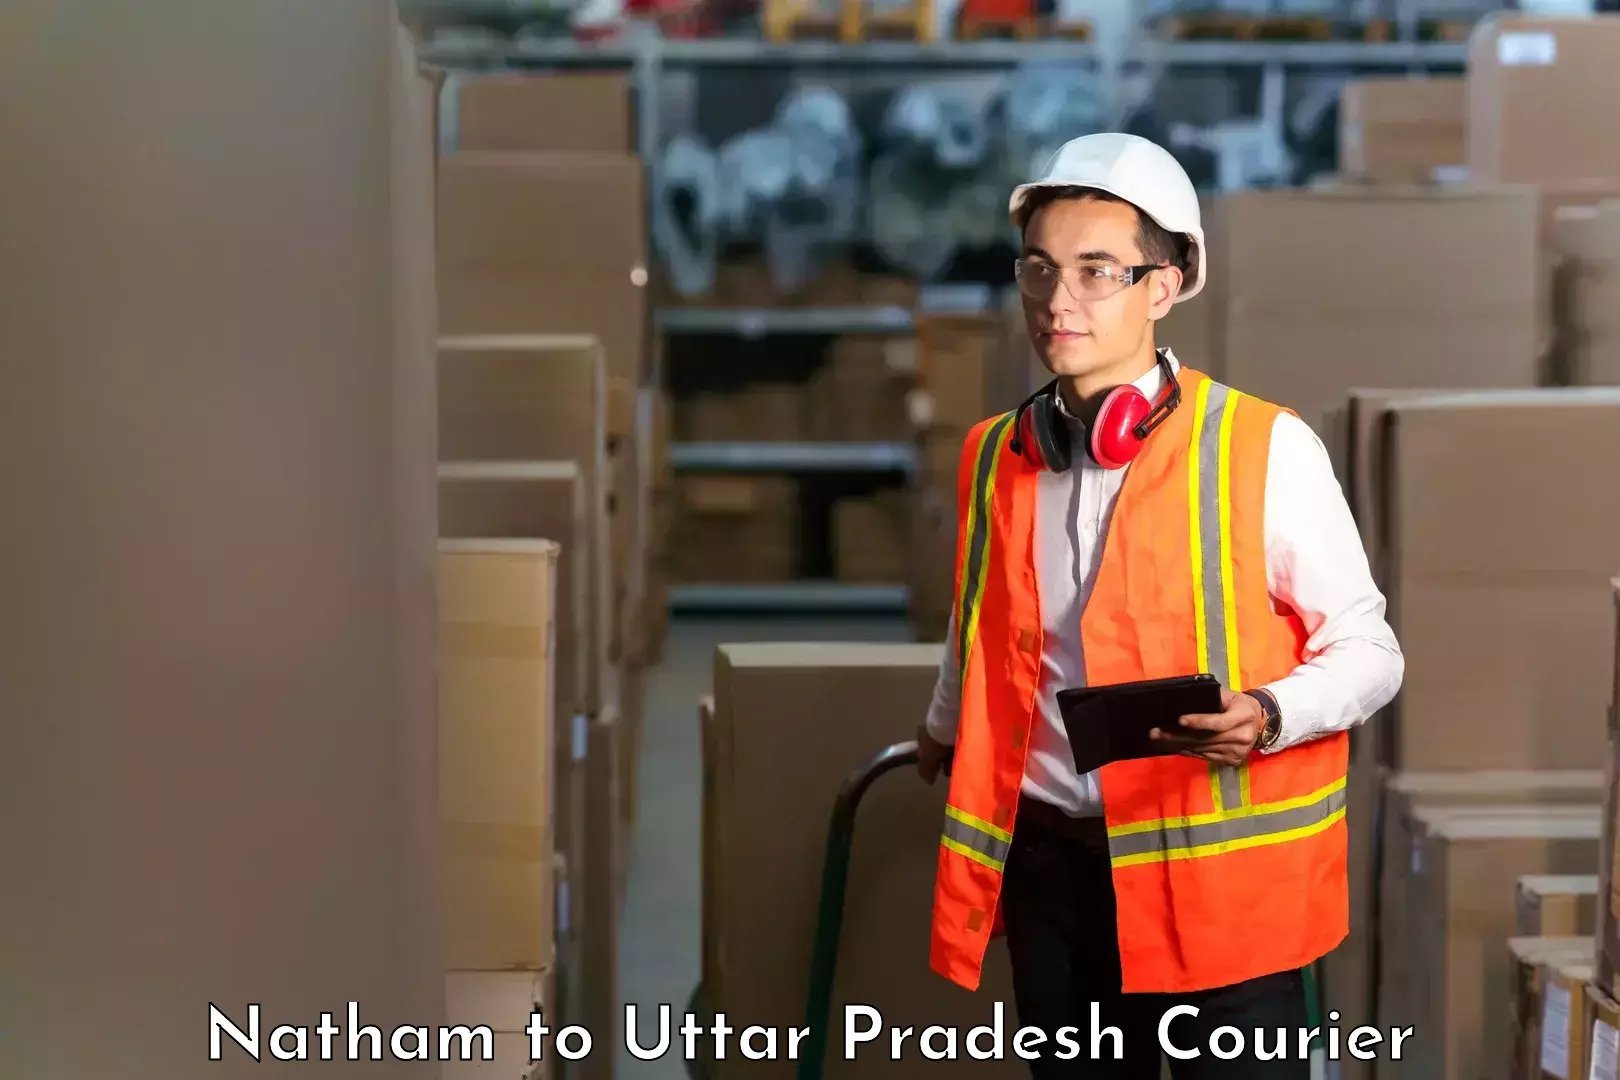 Courier service comparison Natham to Tilhar